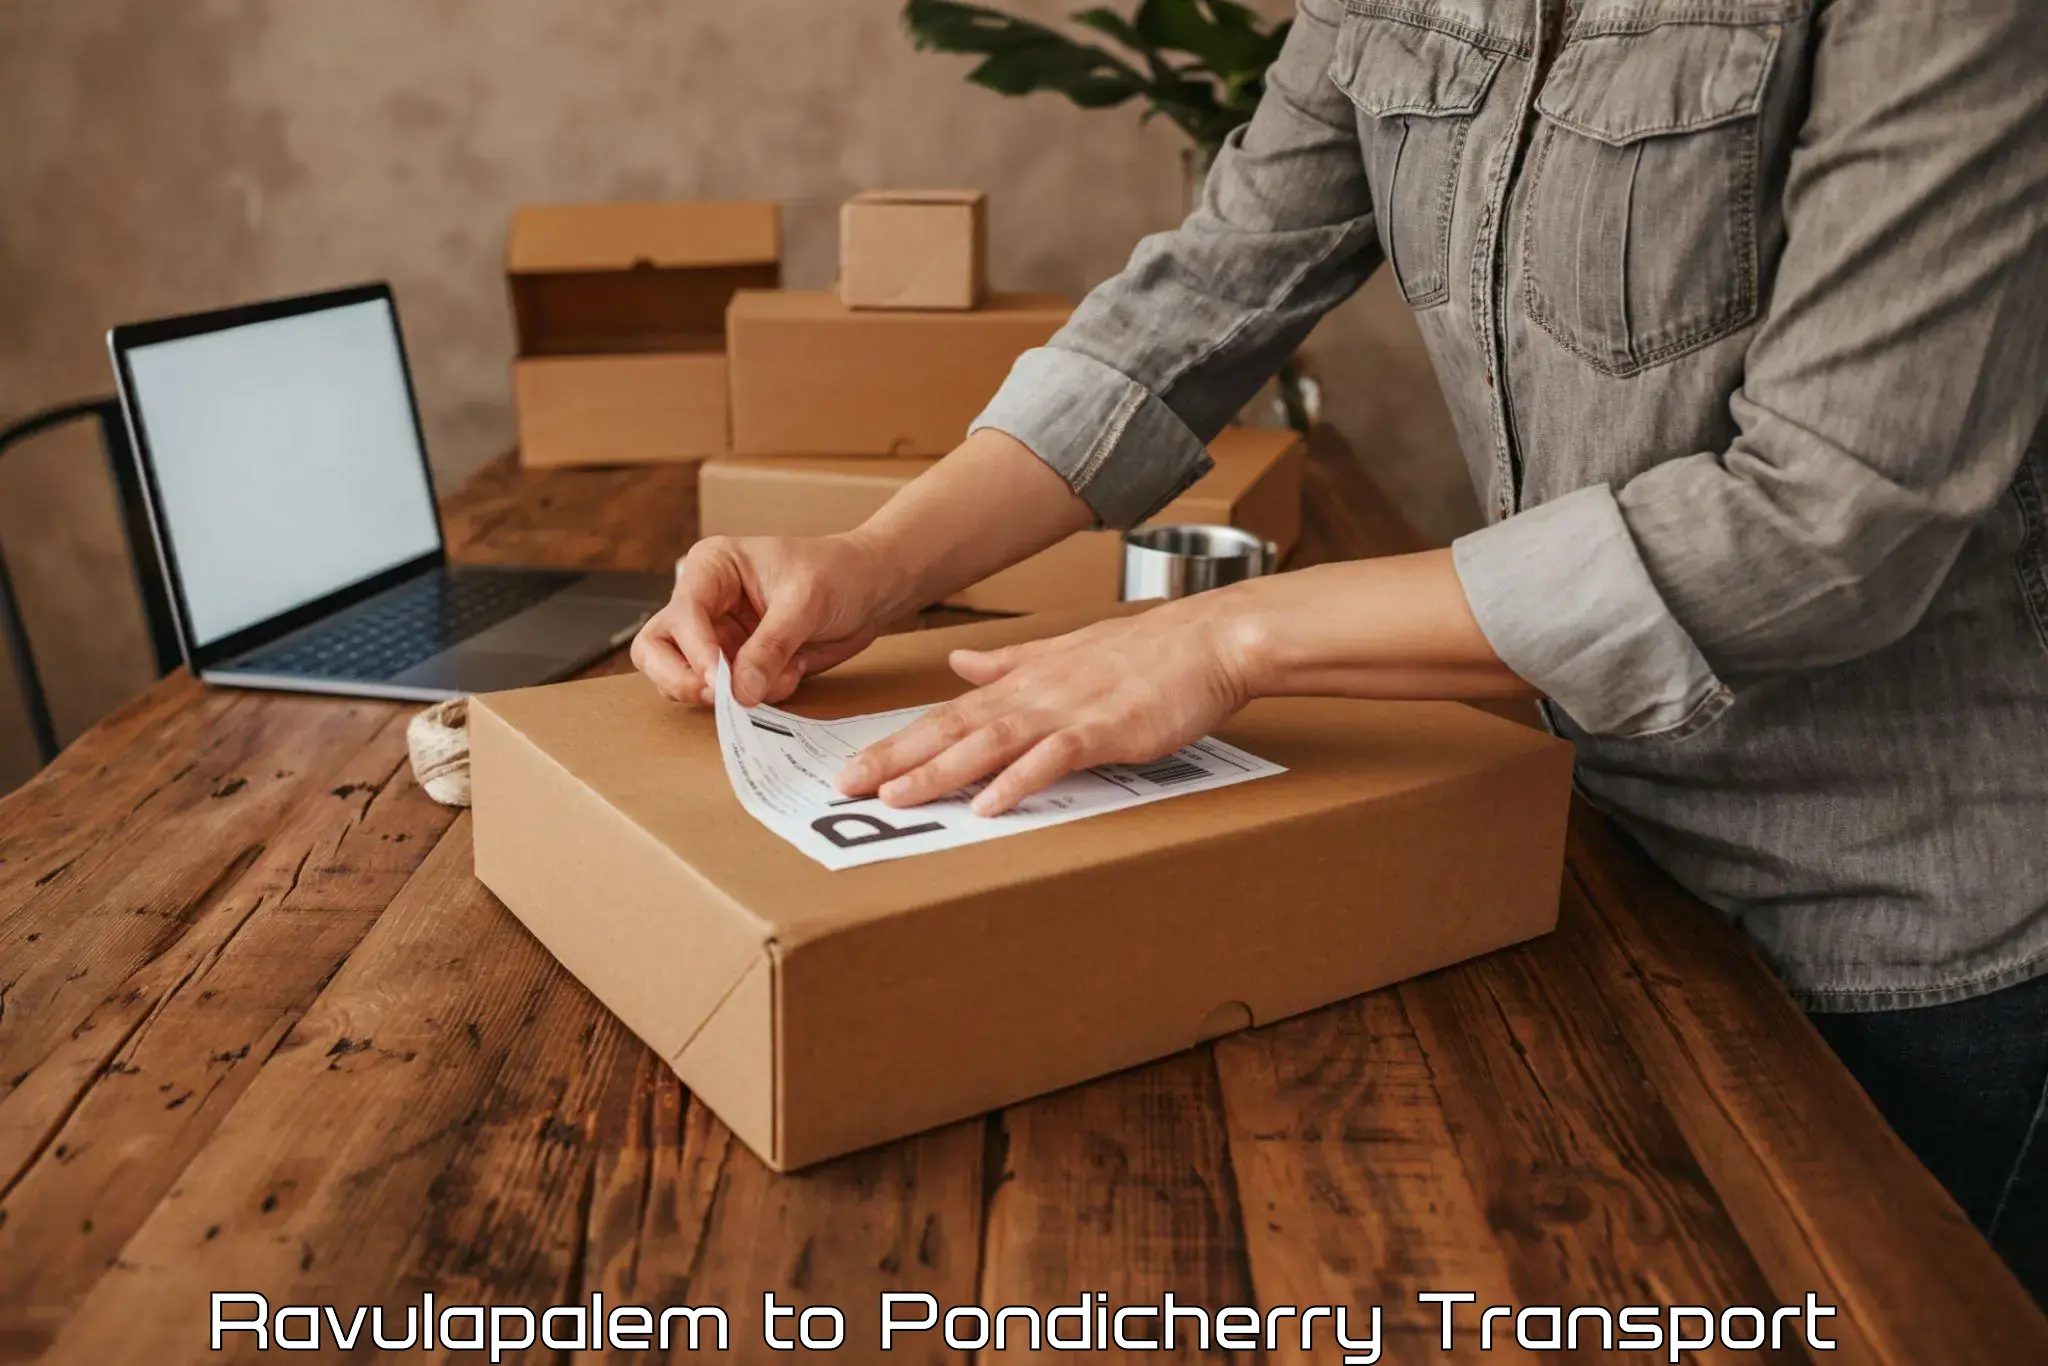 Daily parcel service transport Ravulapalem to Pondicherry